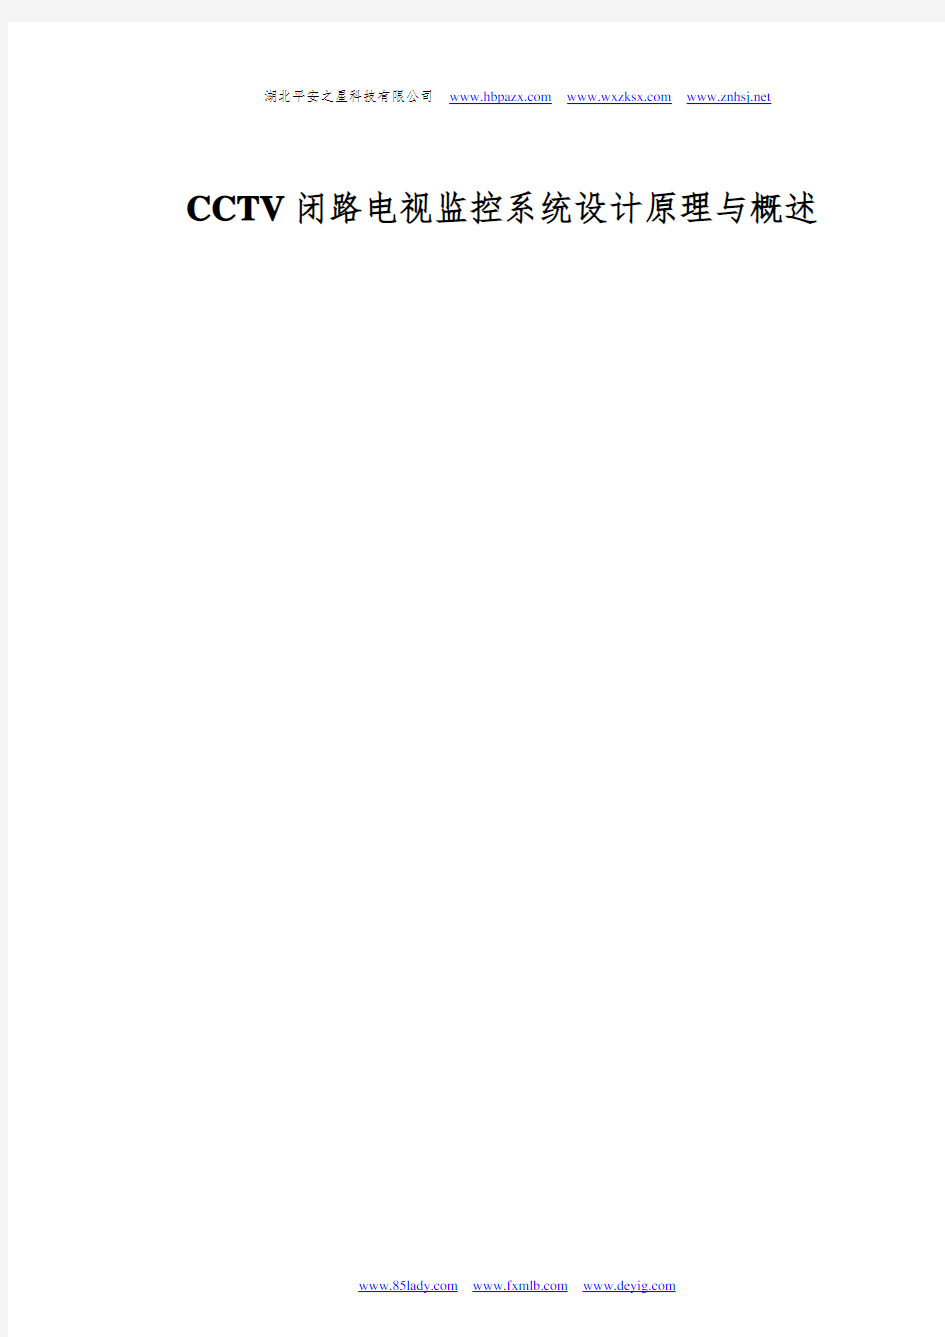 CCTV闭路电视监控系统设计原理与概述